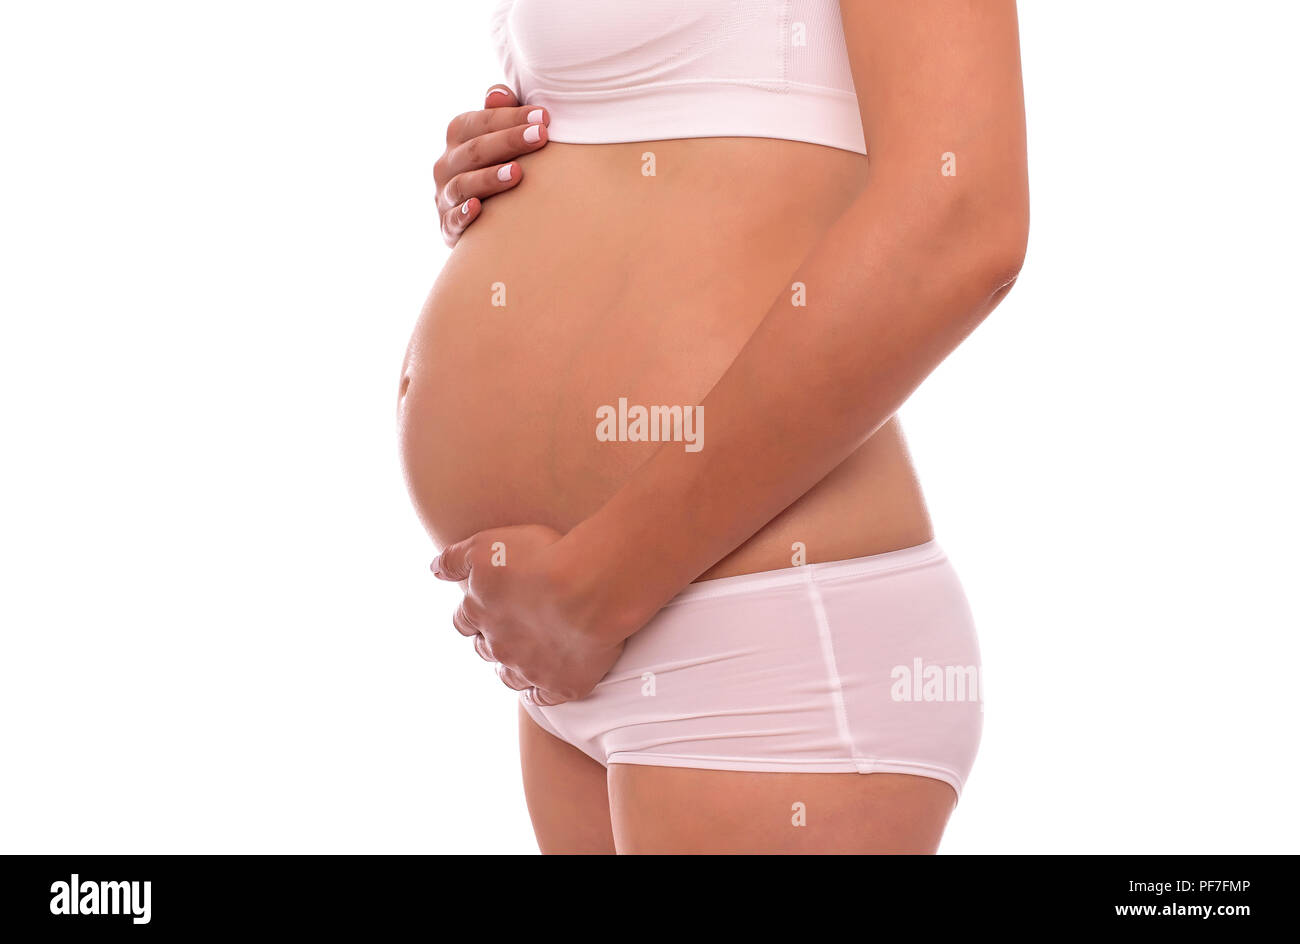 La grossesse. La période est de 20 semaines. Close-up montre la région abdominale. Banque D'Images